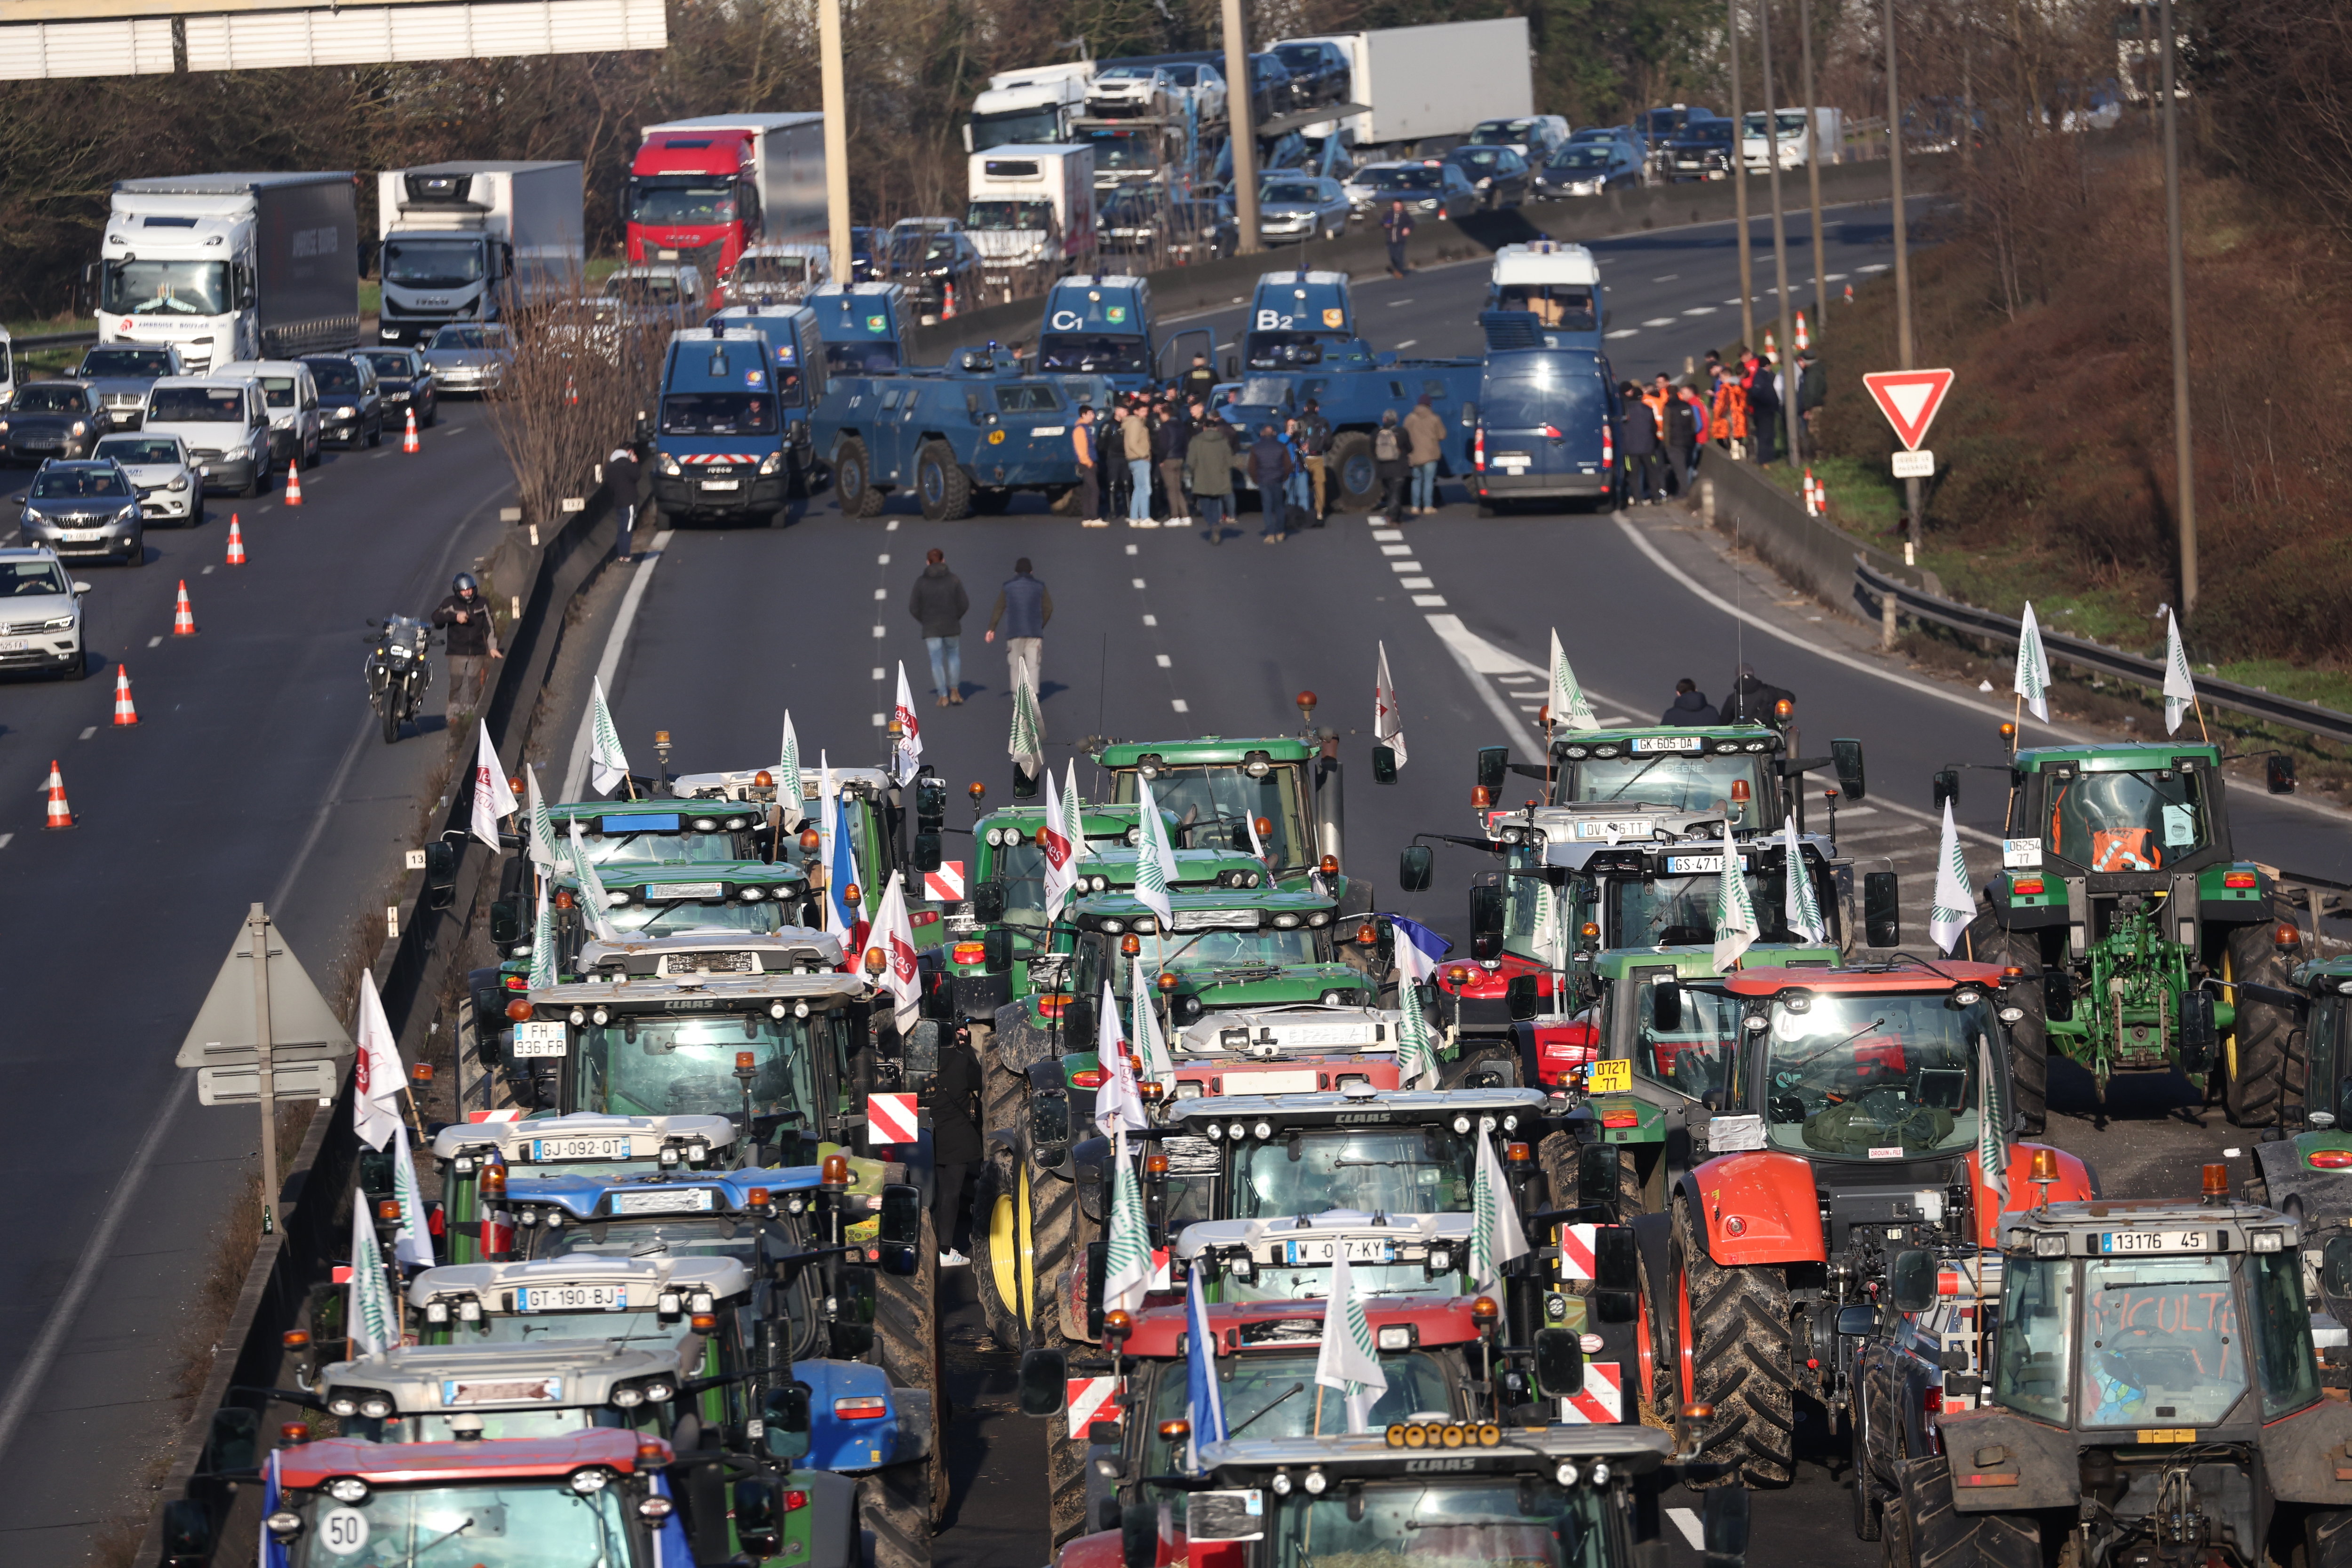 Des agriculteurs en colère font face à des blindés des forces de l'ordre ce mercredi 31 janvier sur l'A6 à quelques kilomètres seulement de Paris. LP/Arnaud Journois